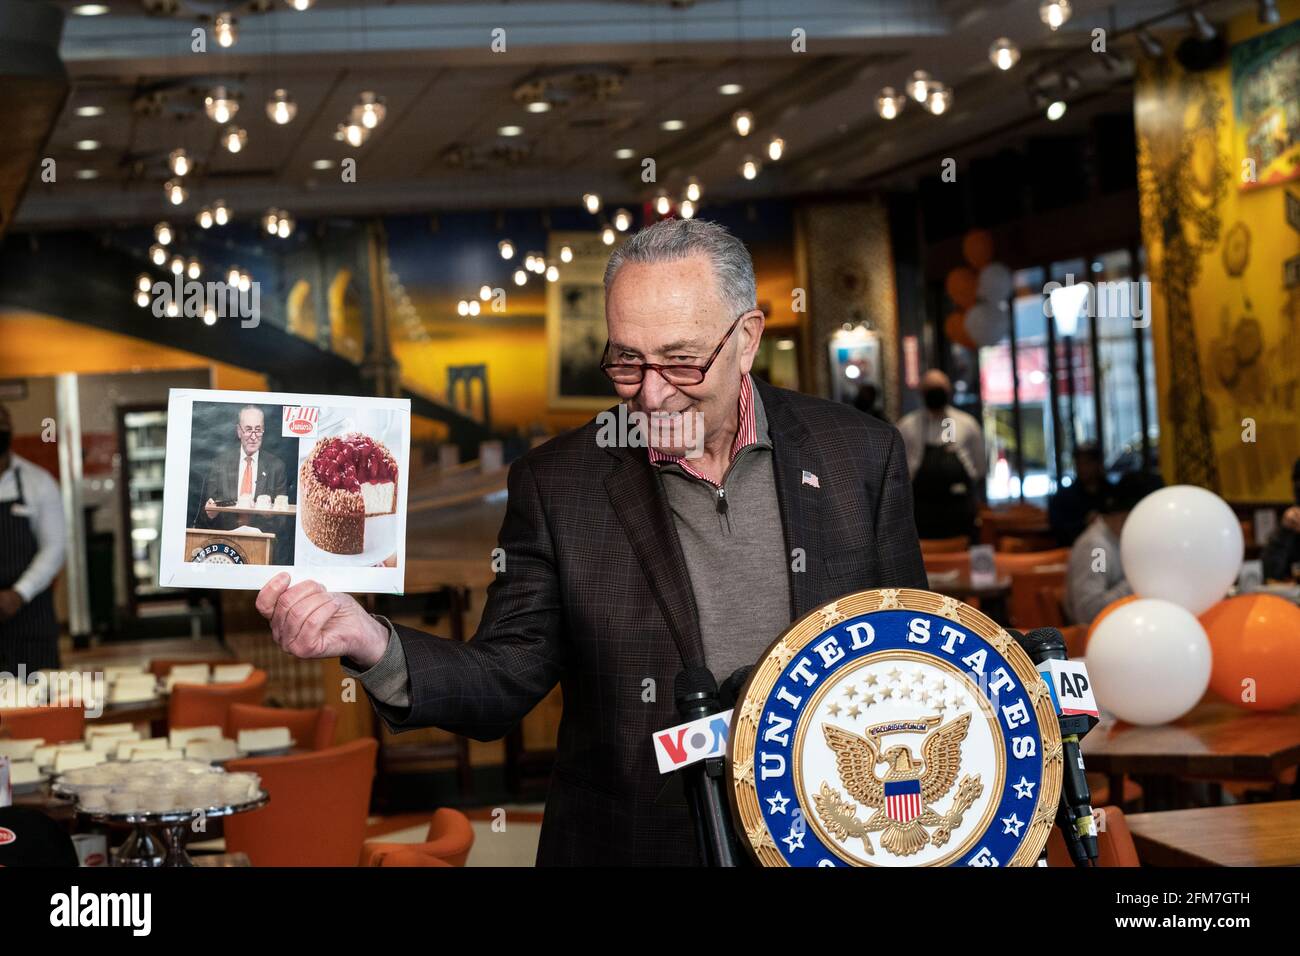 New York, NY - 6 maggio 2021: Il senatore degli Stati Uniti Charles Schumer segna la riapertura del ristorante Cheesecake di Junior su Times Square Foto Stock